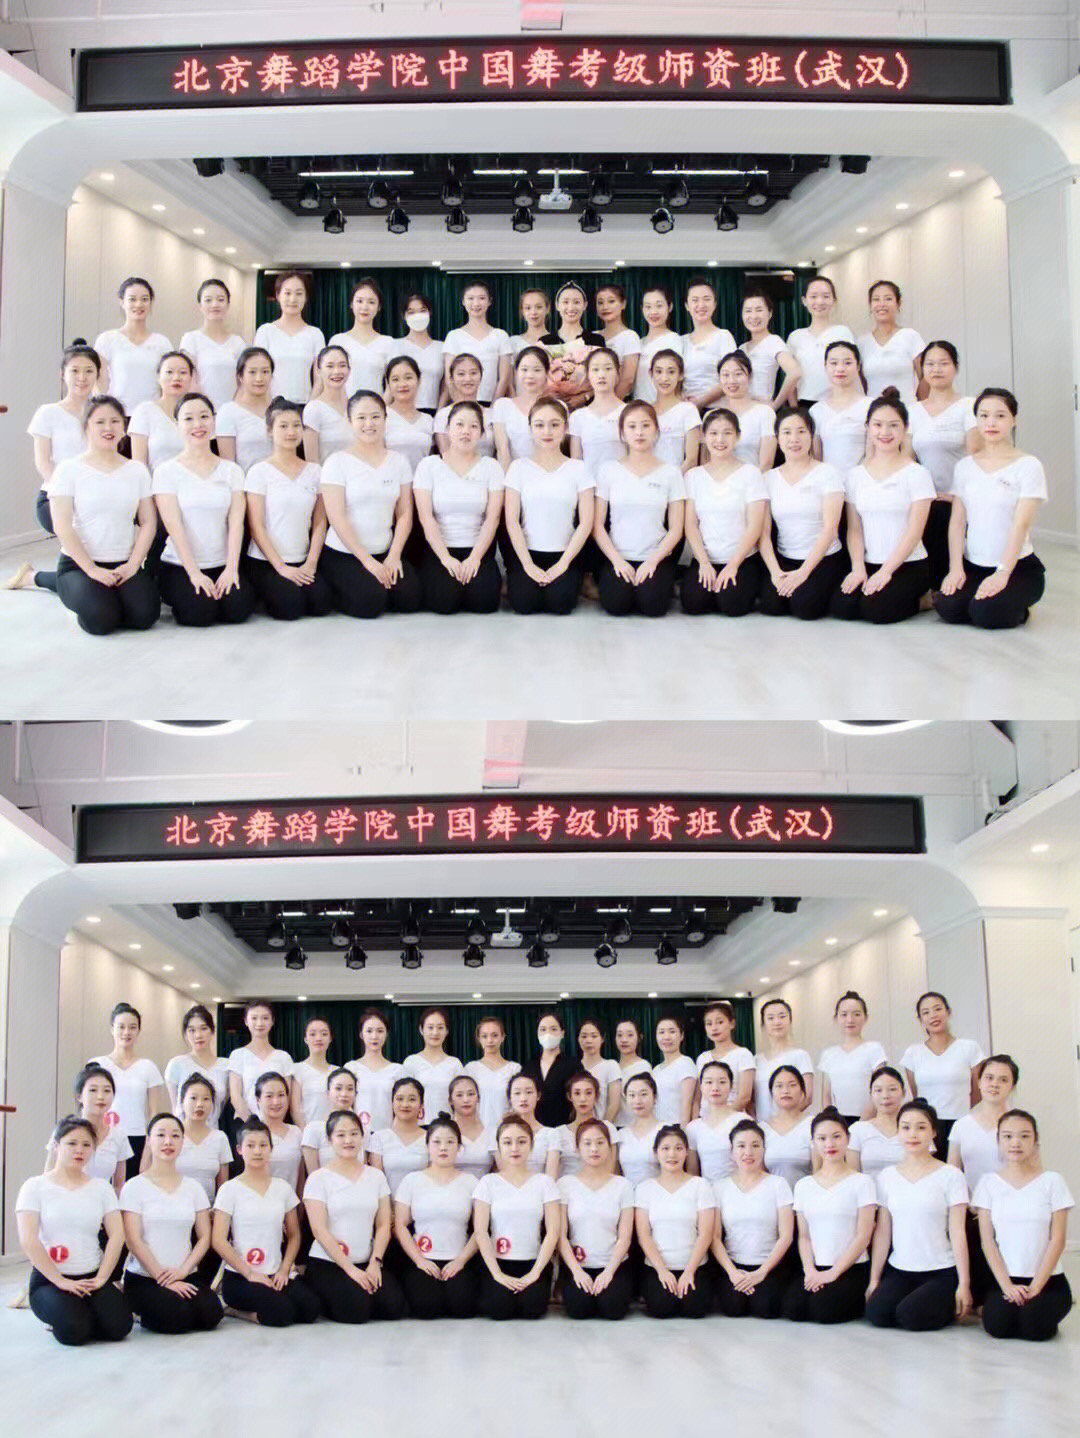 中国舞教师等级考试级别越高,难度越高,不同等级对老师的水平要求不同